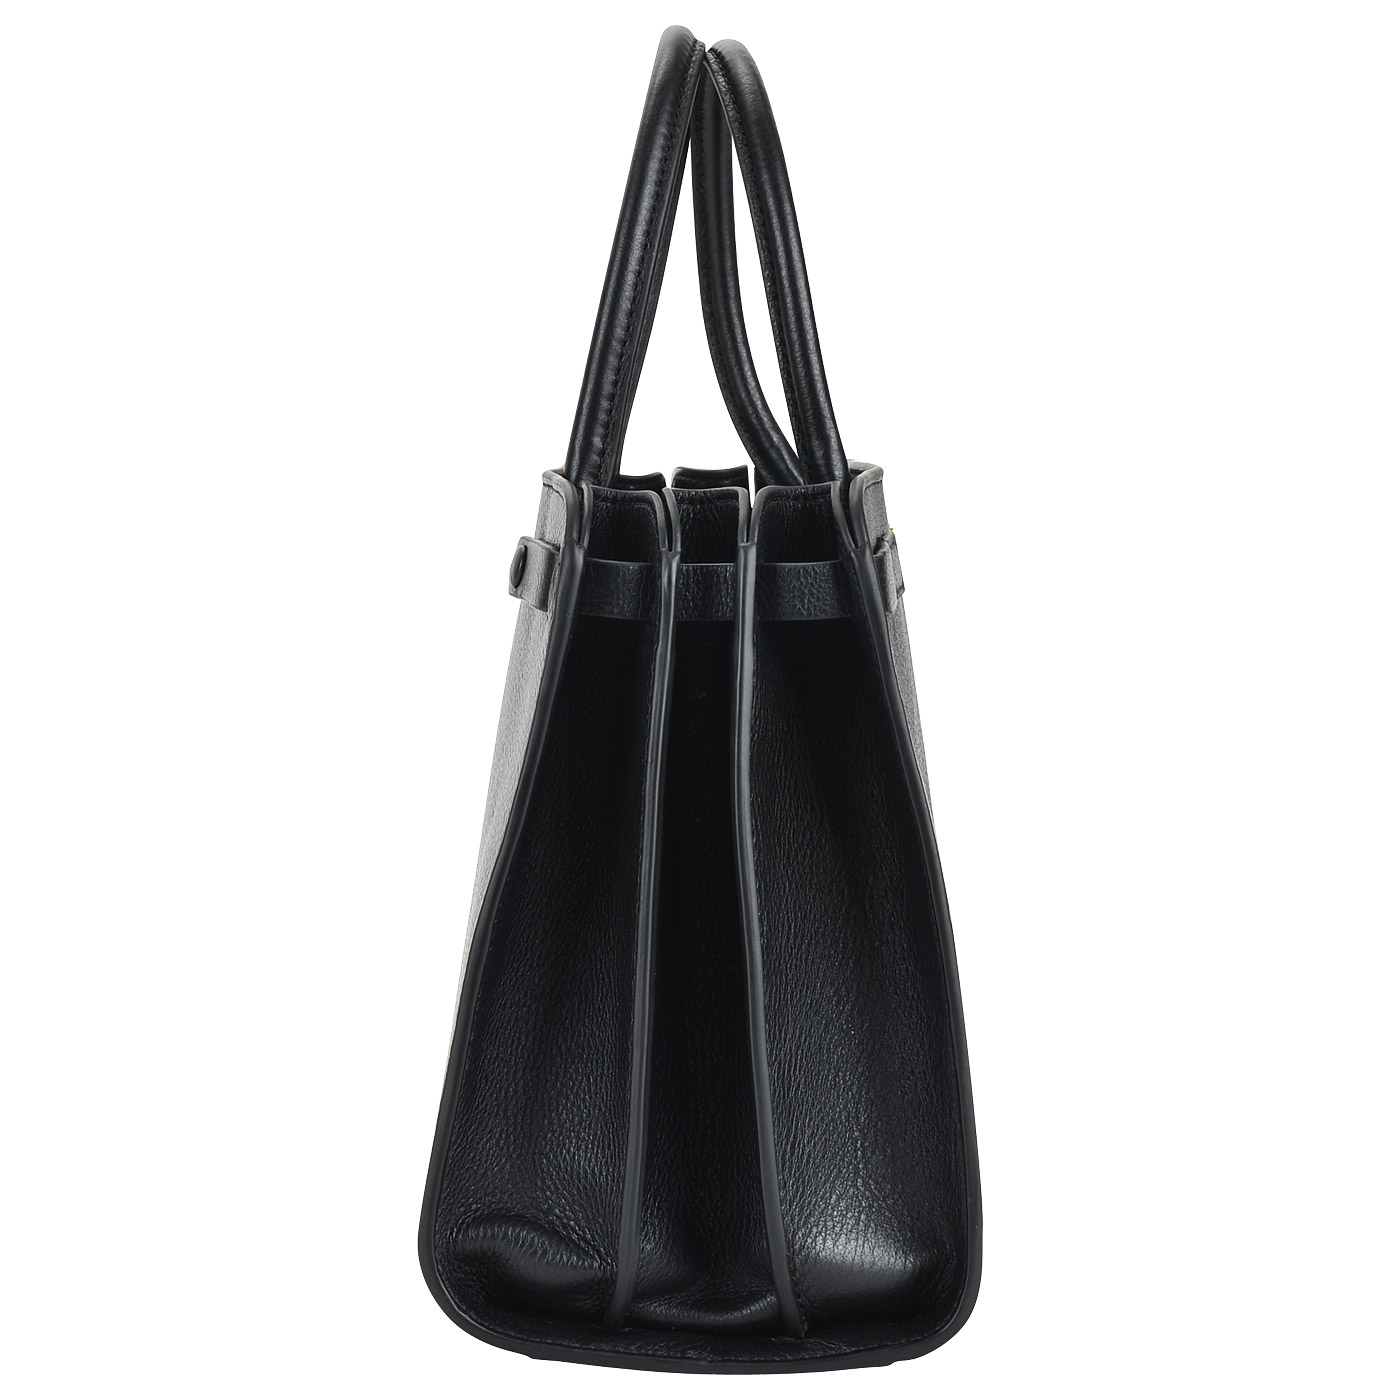 Женская кожаная сумка со съемным ремешком Coccinelle Clelia